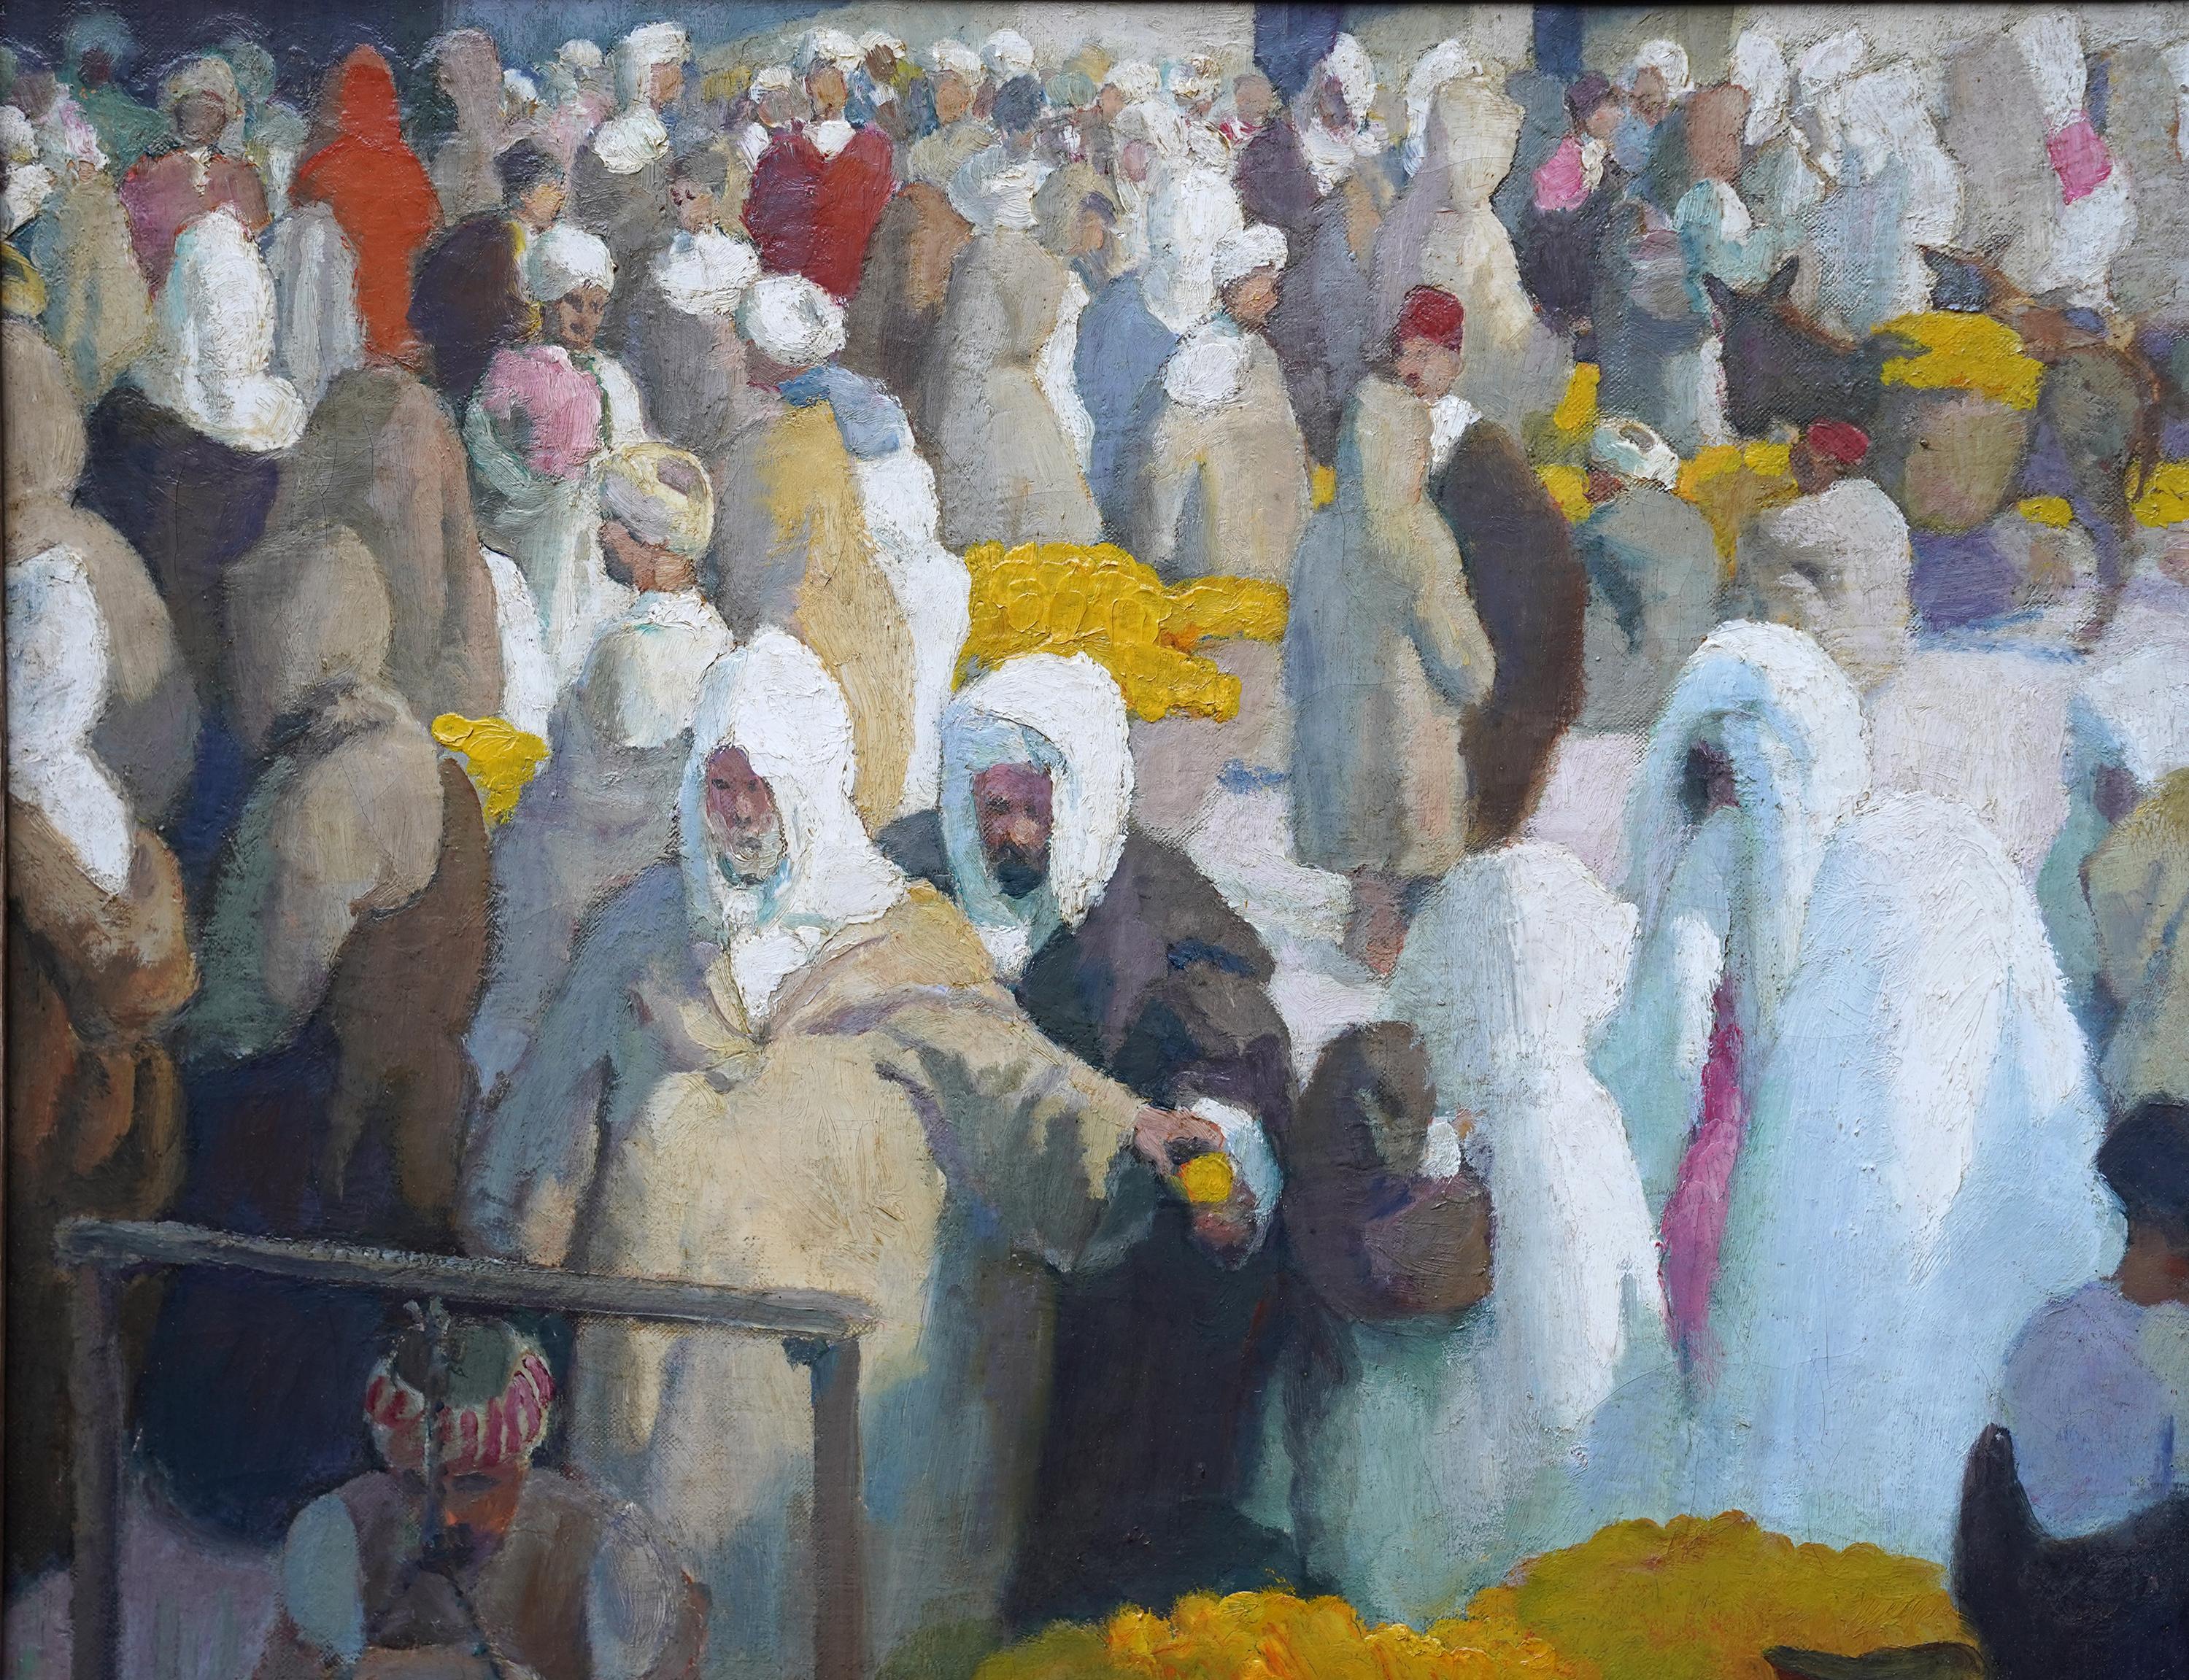 Tangiers Lemon Market - Peinture à l'huile d'art figuratif oriental britannique des années 1920  - Painting de Spencer Pryse